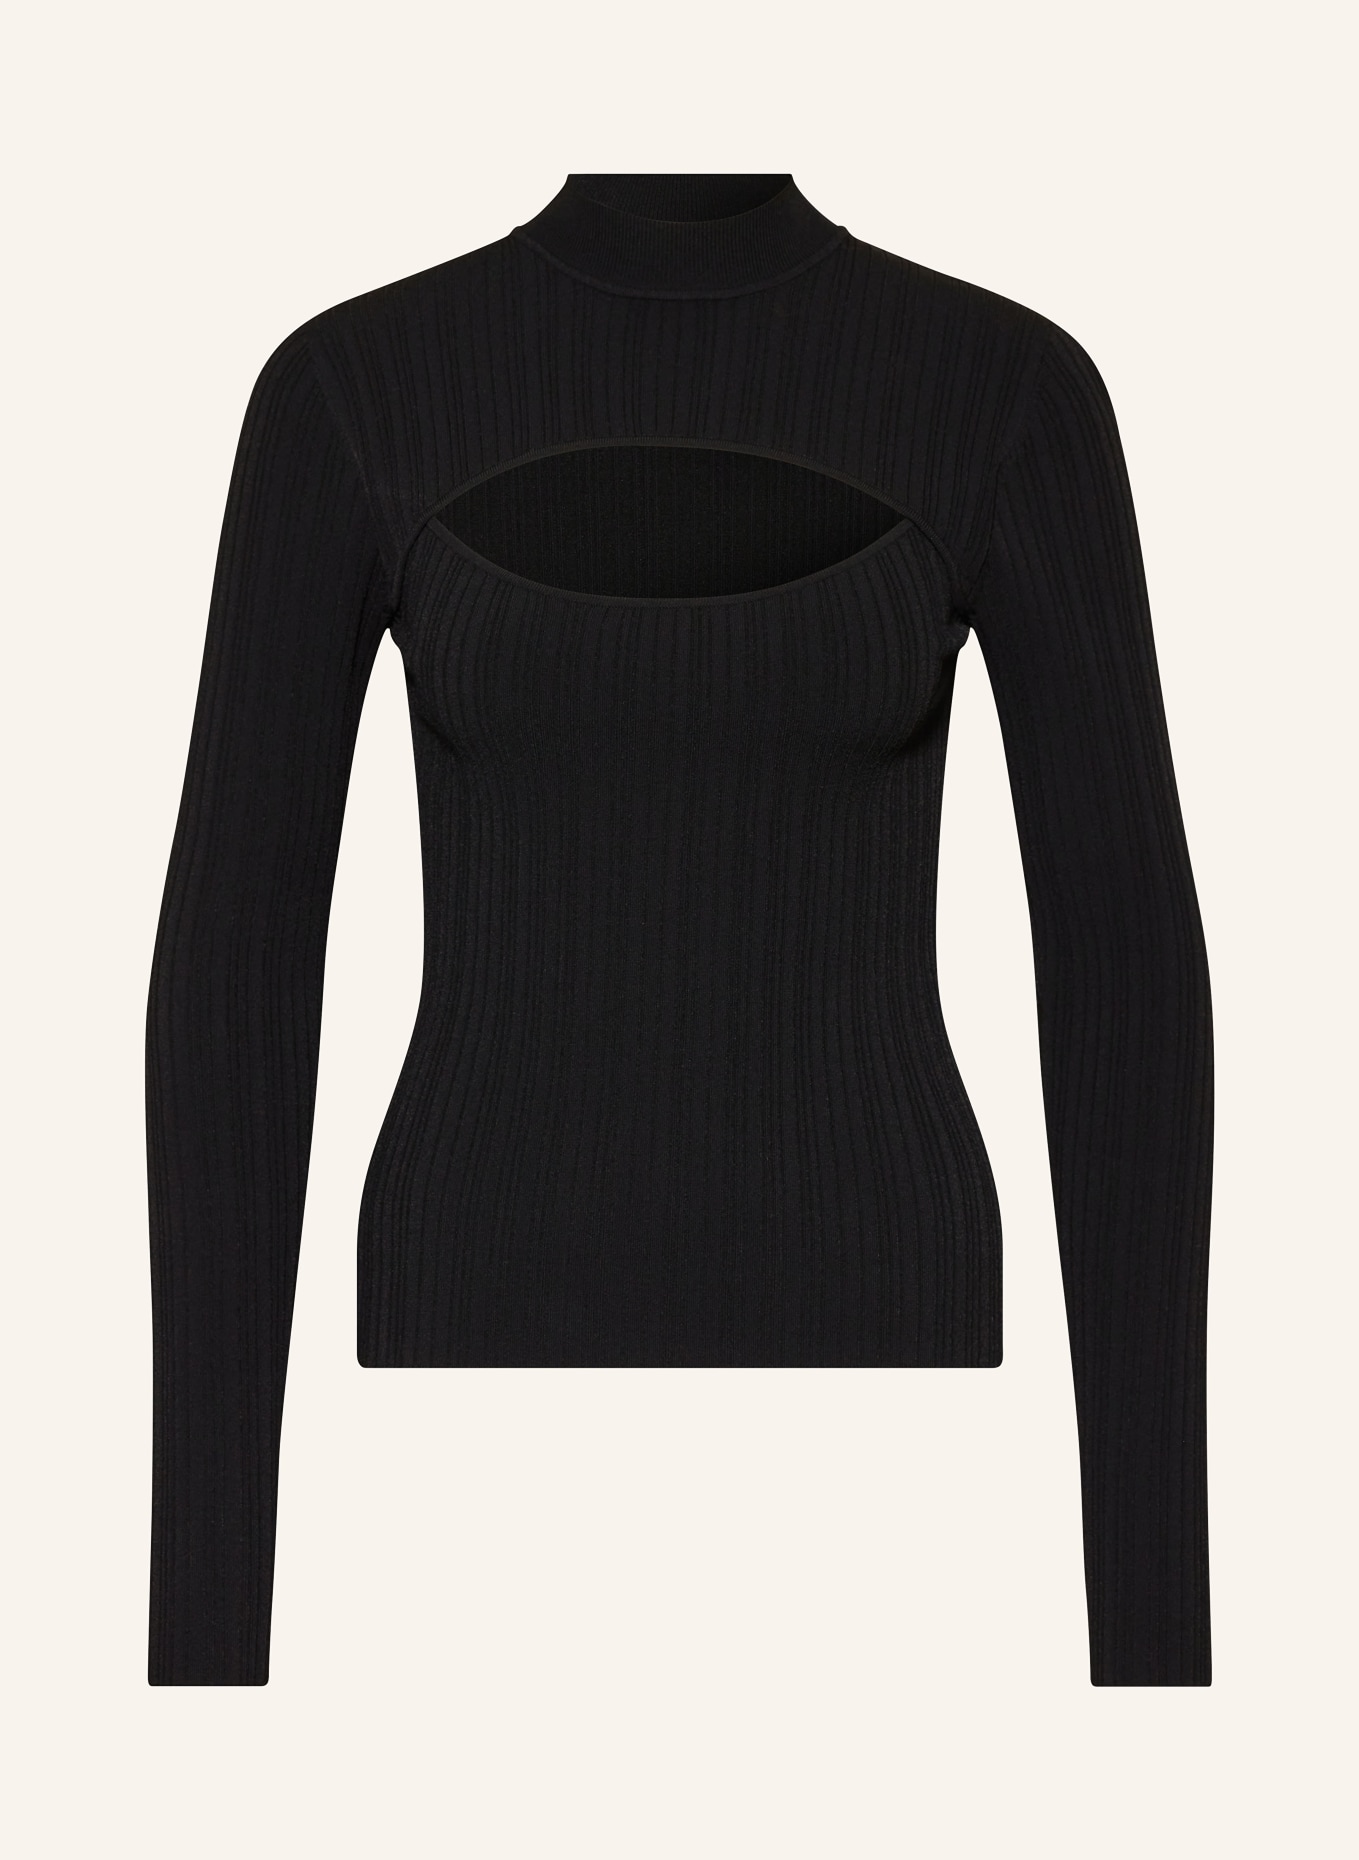 PATRIZIA PEPE Pullover mit Cut-out, Farbe: SCHWARZ (Bild 1)